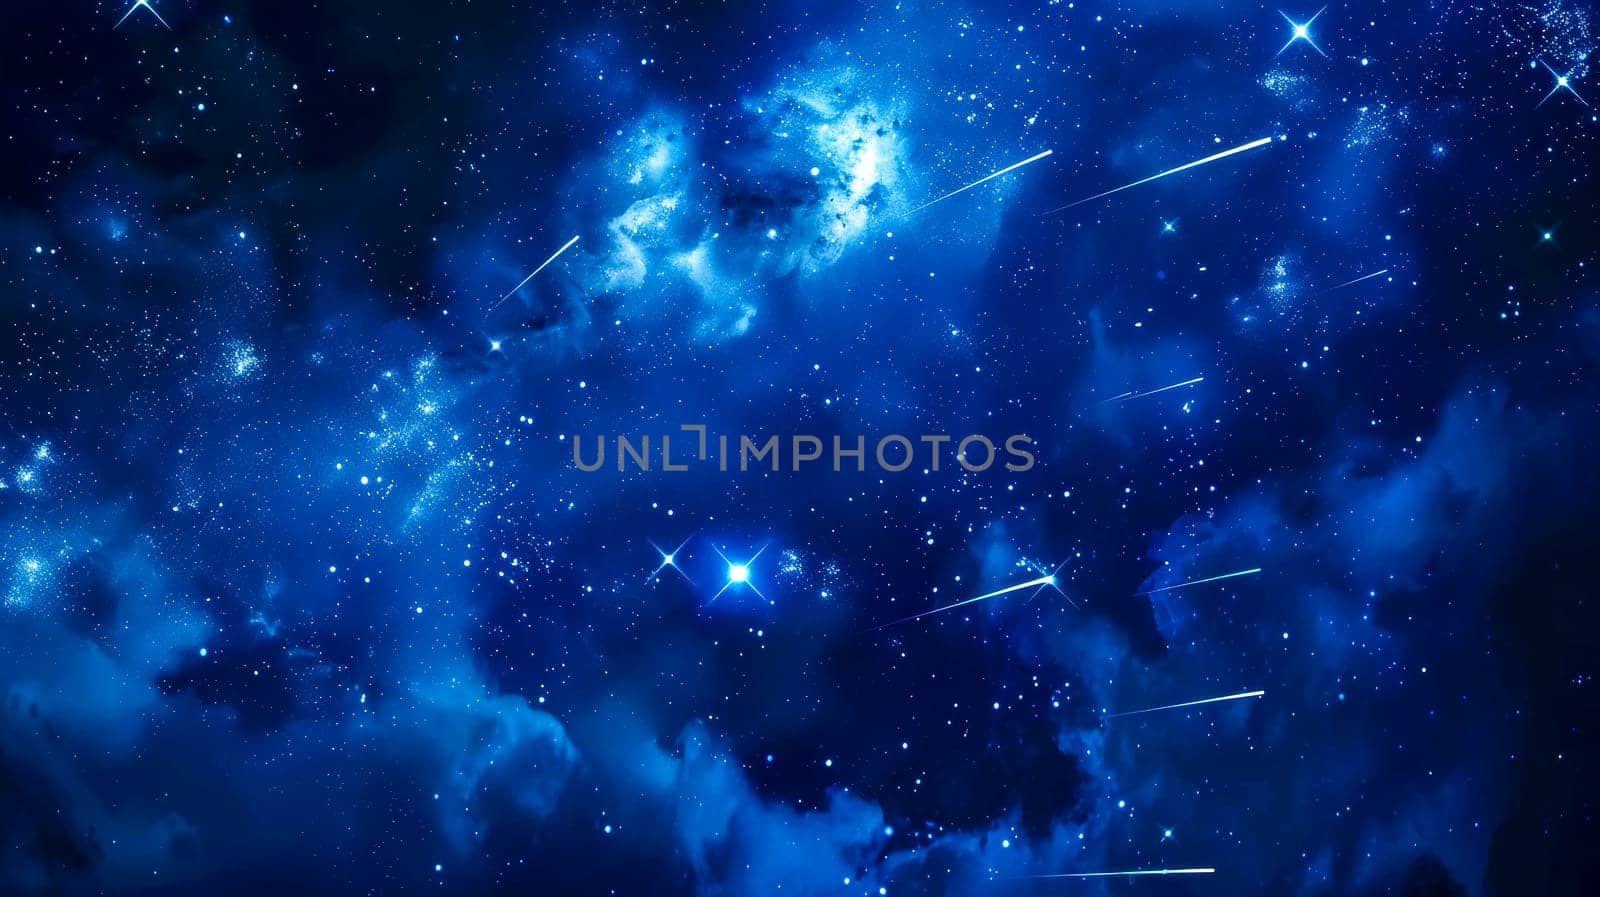 Celestial wonders: meteor shower in starry night sky by Edophoto